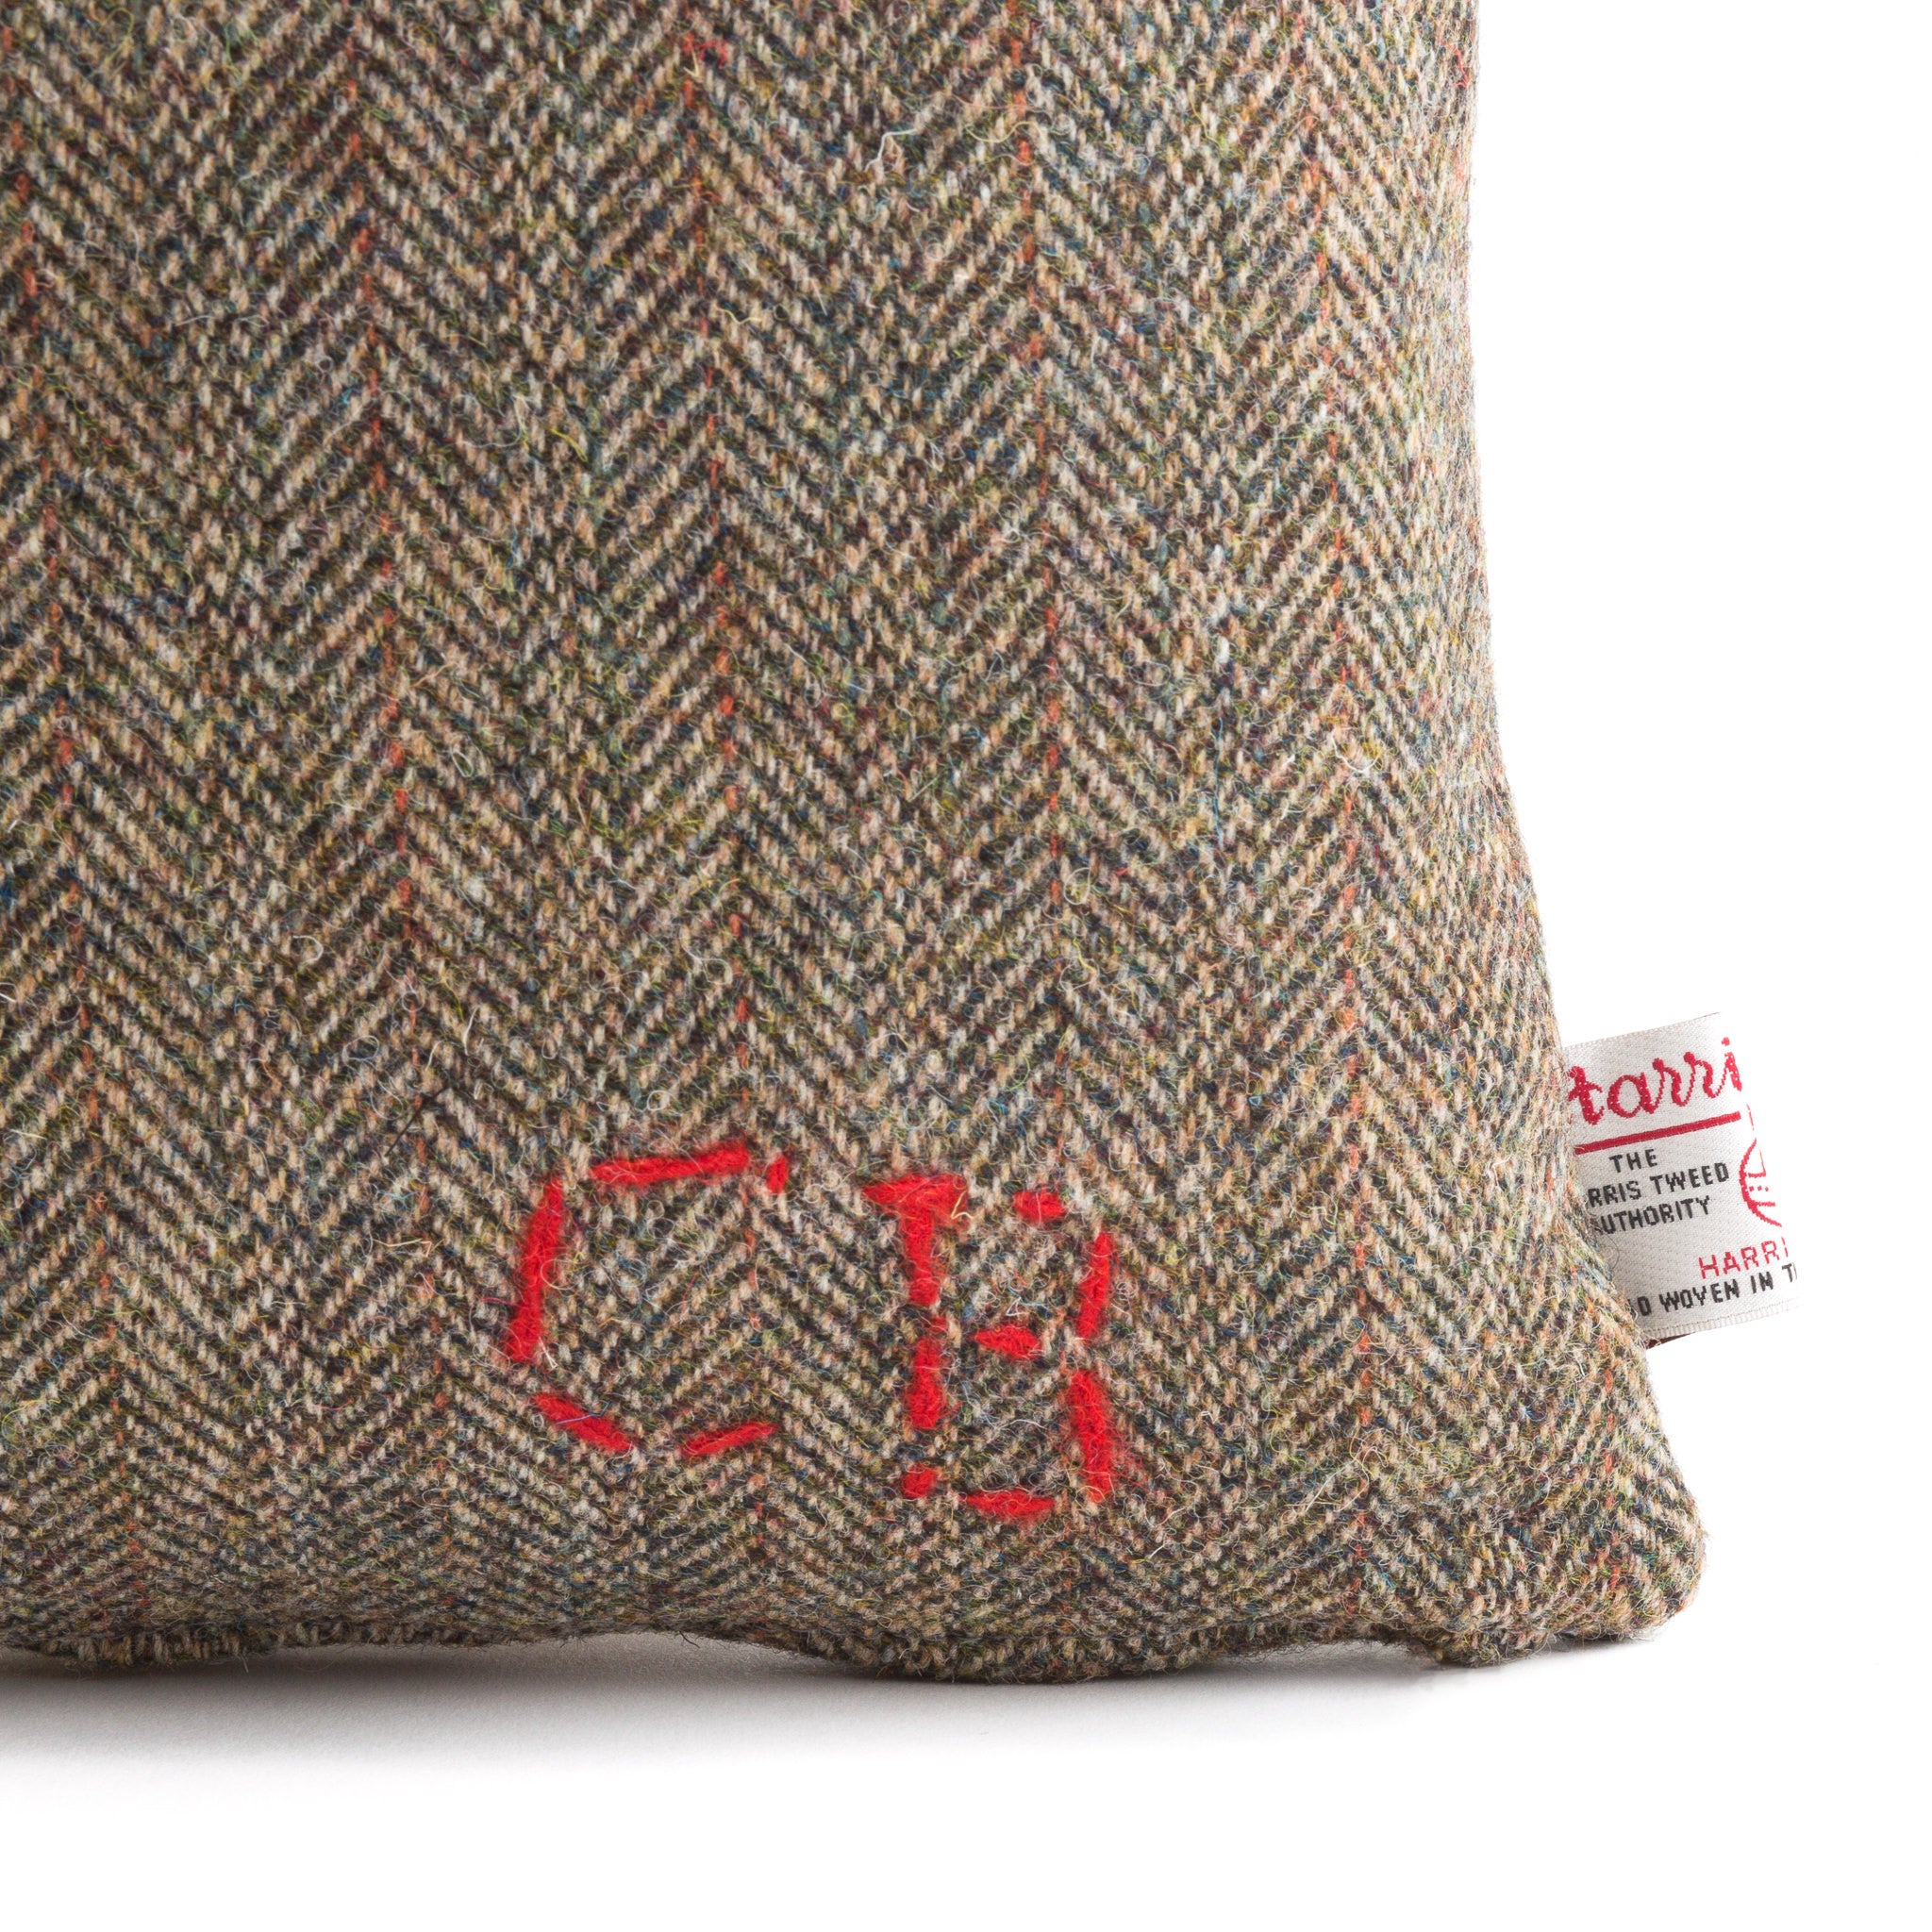 Harris Tweed/Pure Wool/Outer Hebrides/Brown/Herringbone/Red Detail/Scatter/Cushion/Detail/